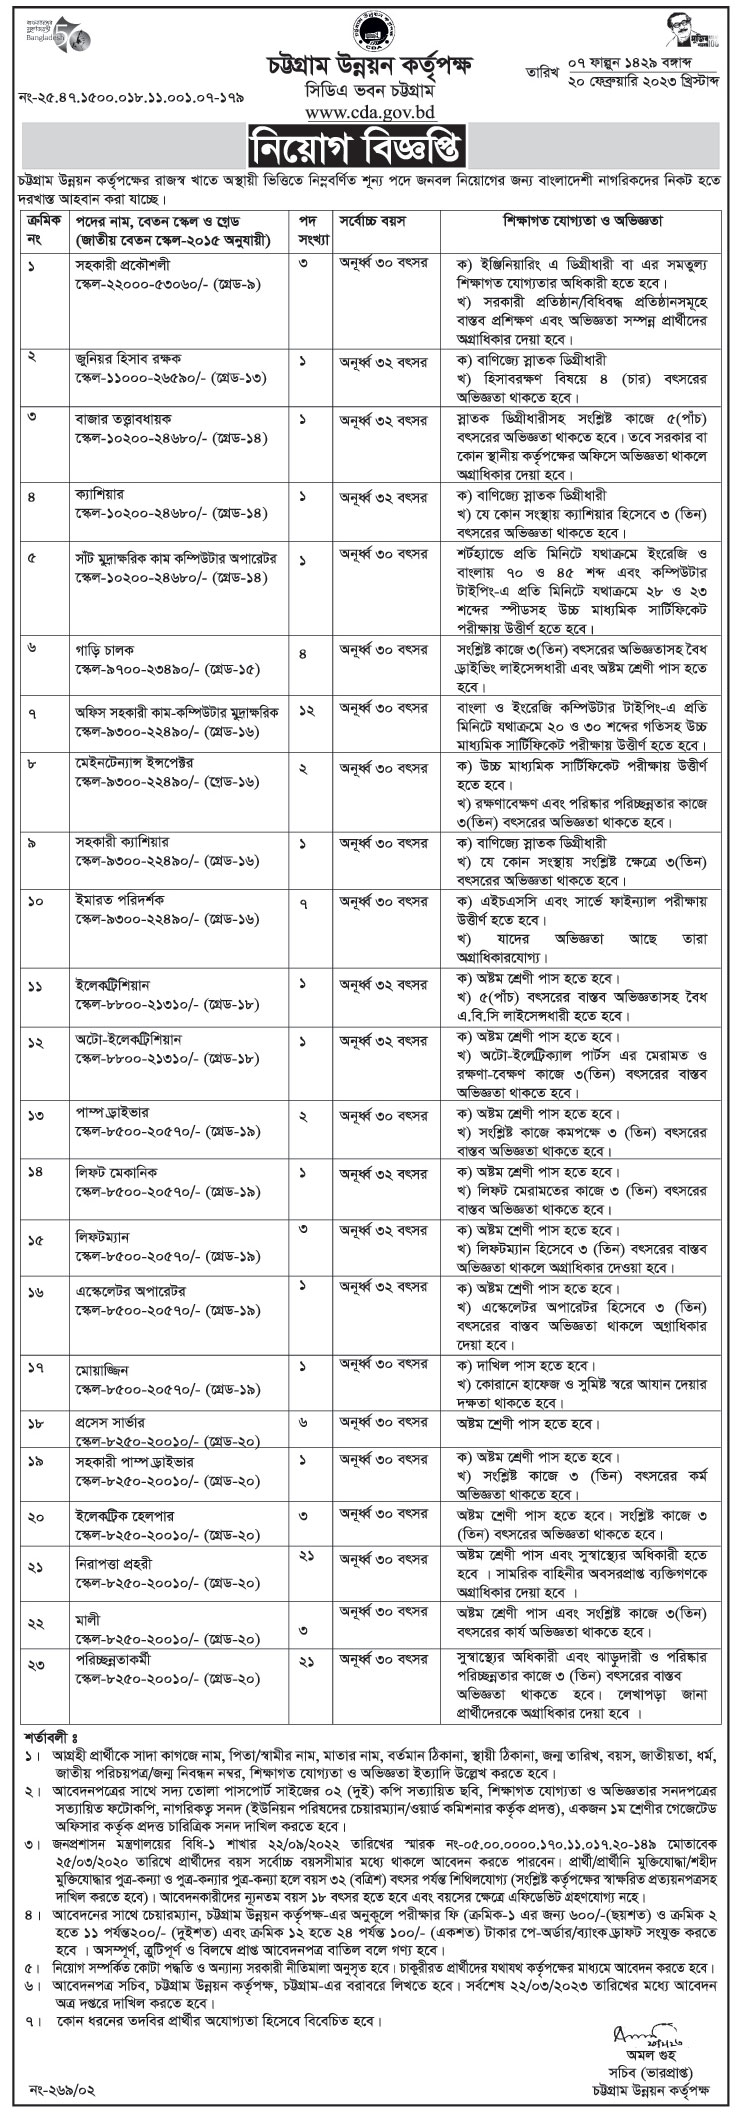 চট্টগ্রাম উন্নয়ন কর্তৃপক্ষ নিয়োগ বিজ্ঞপ্তি ২০২৩ - চট্টগ্রাম নিয়োগ বিজ্ঞপ্তি ২০২৩ - Chittagong Development Authority Job Circular 2023 - cda job circular 2023 - Chittagong Job Circular 2023 - chattogram chakrir khobor 2023